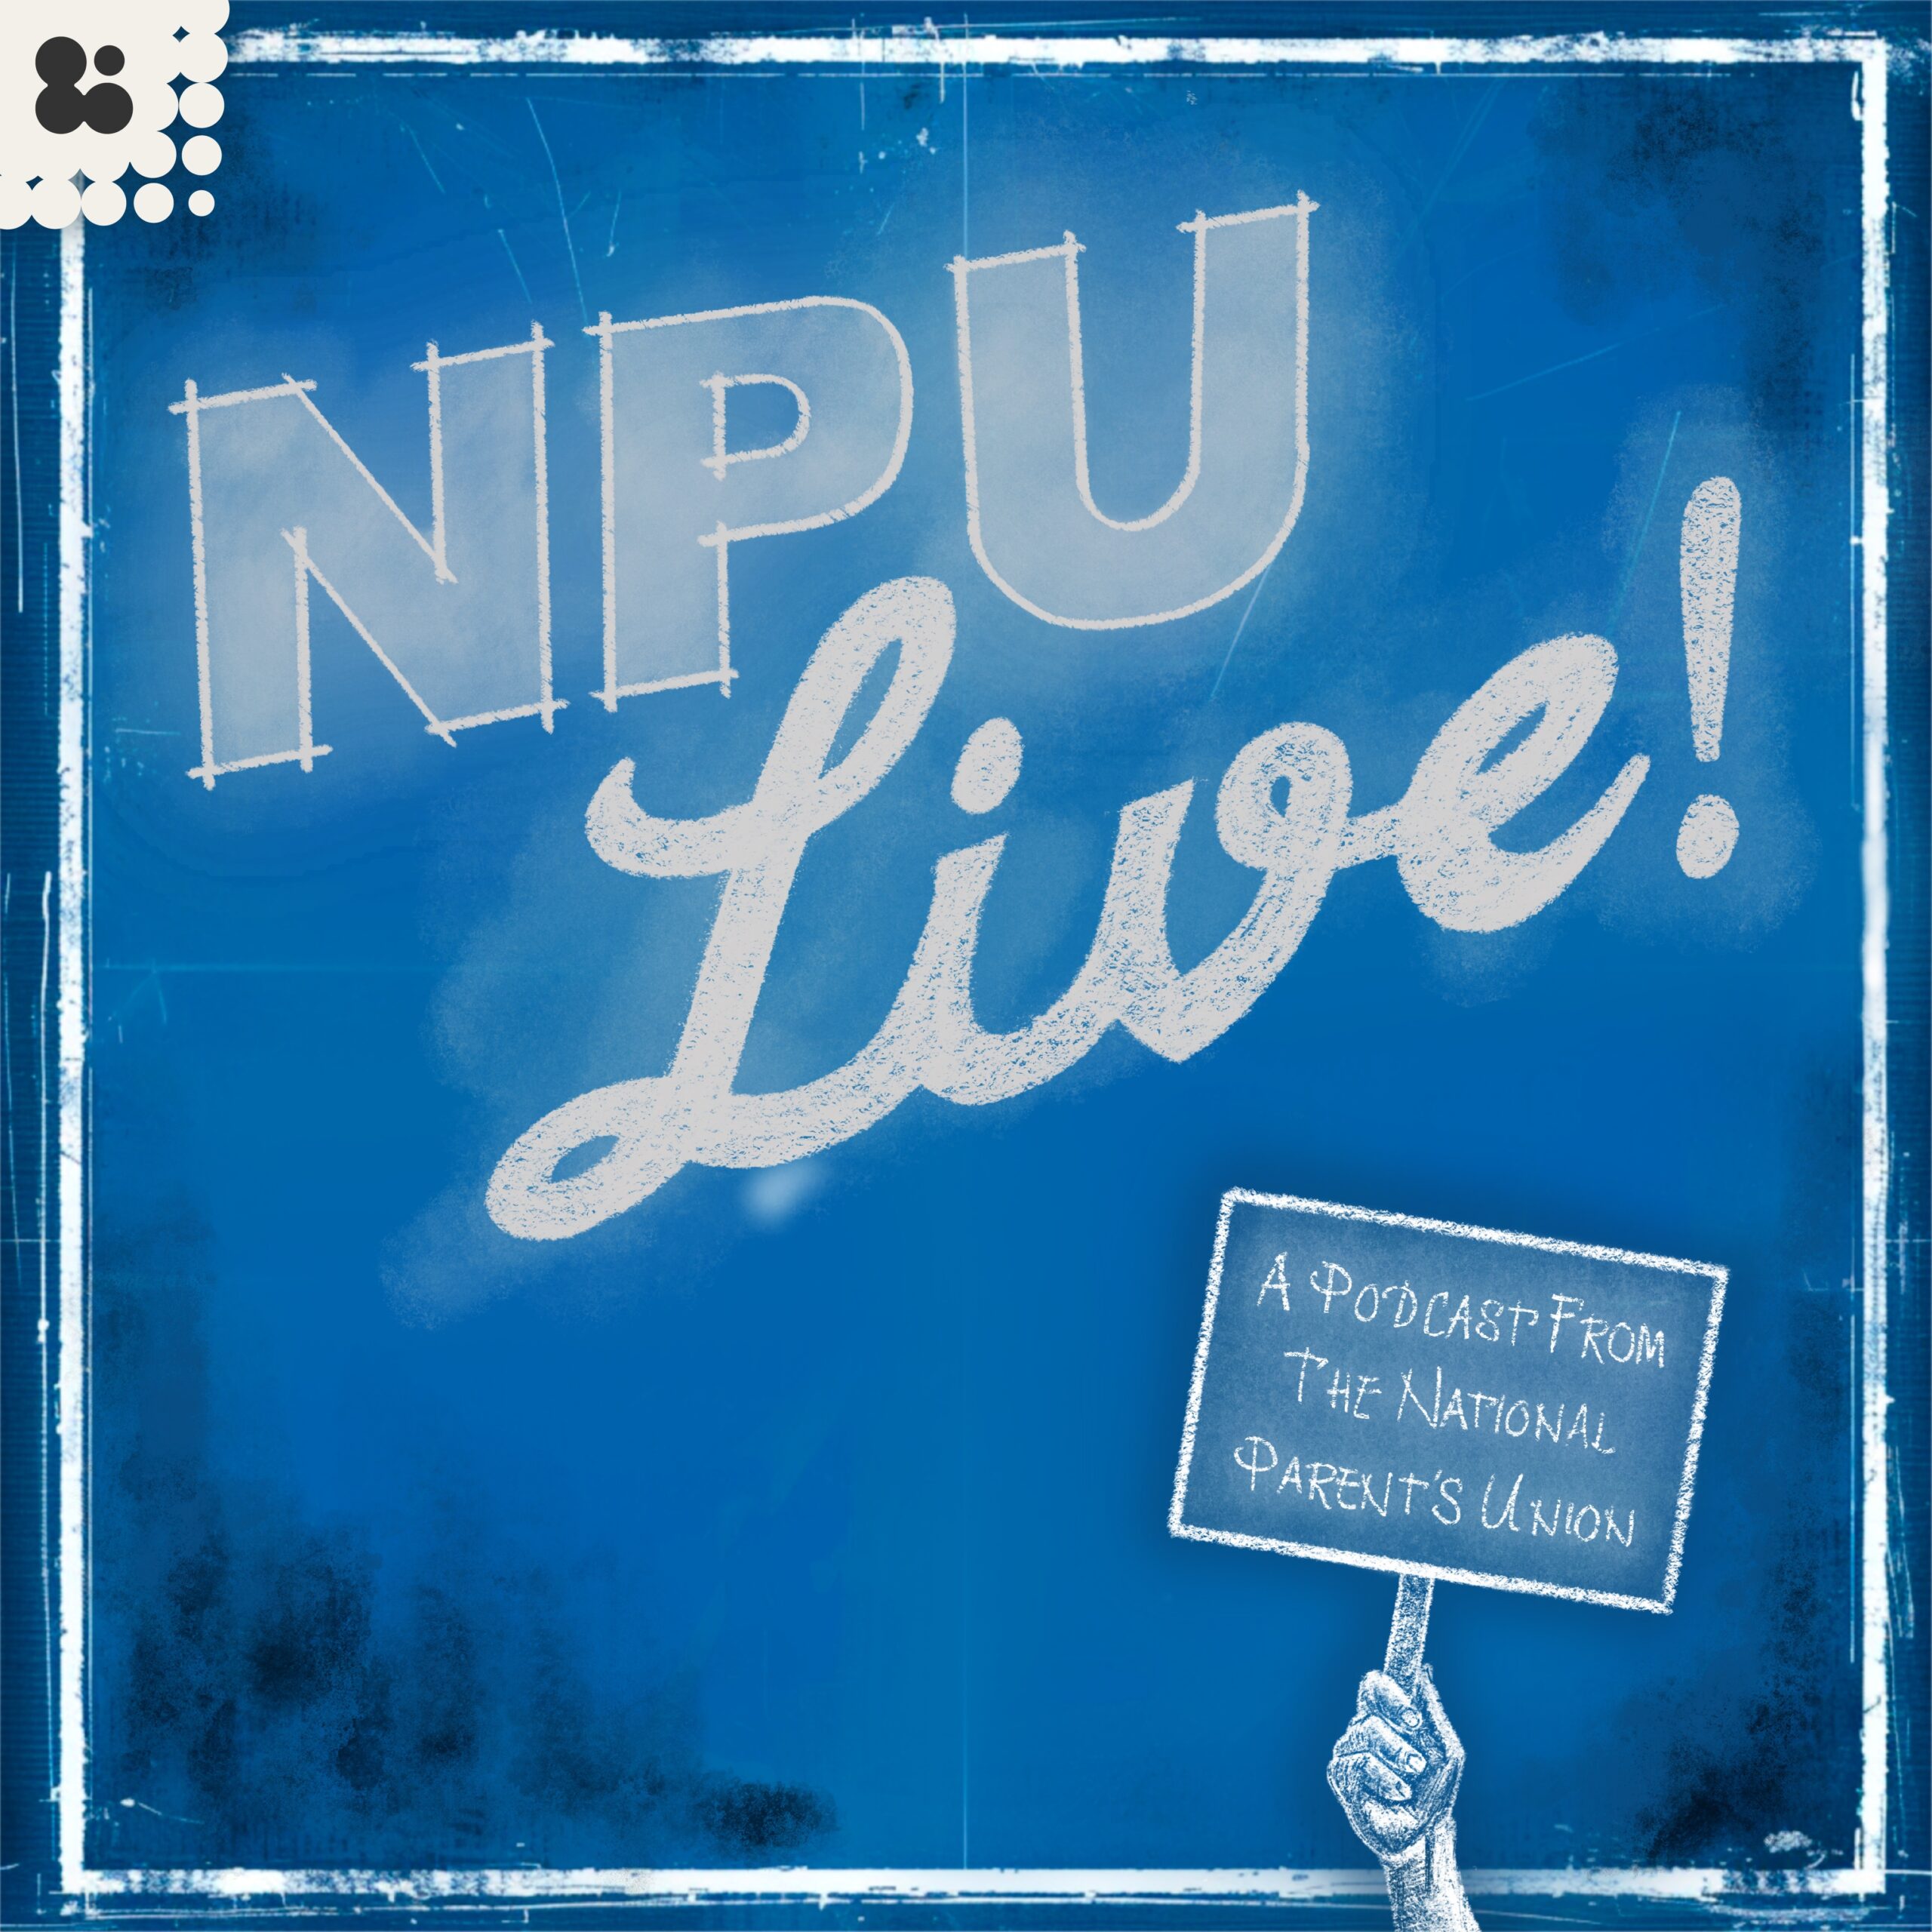 National Parents Union Podcast